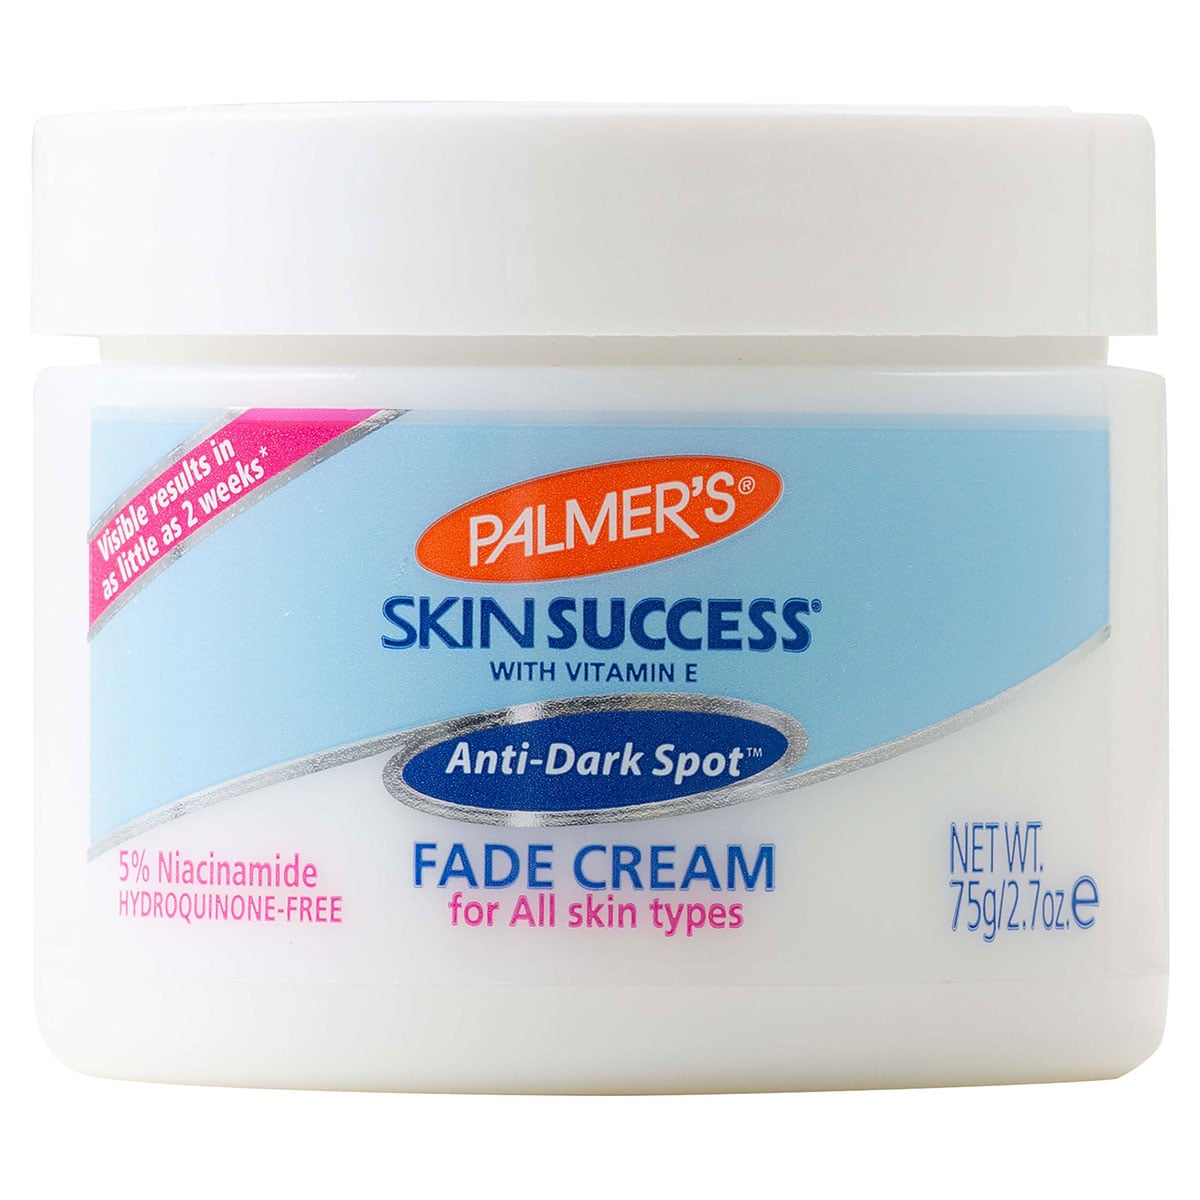 Palmers Skin Success Anti-Dark Spot Fade Cream 75g